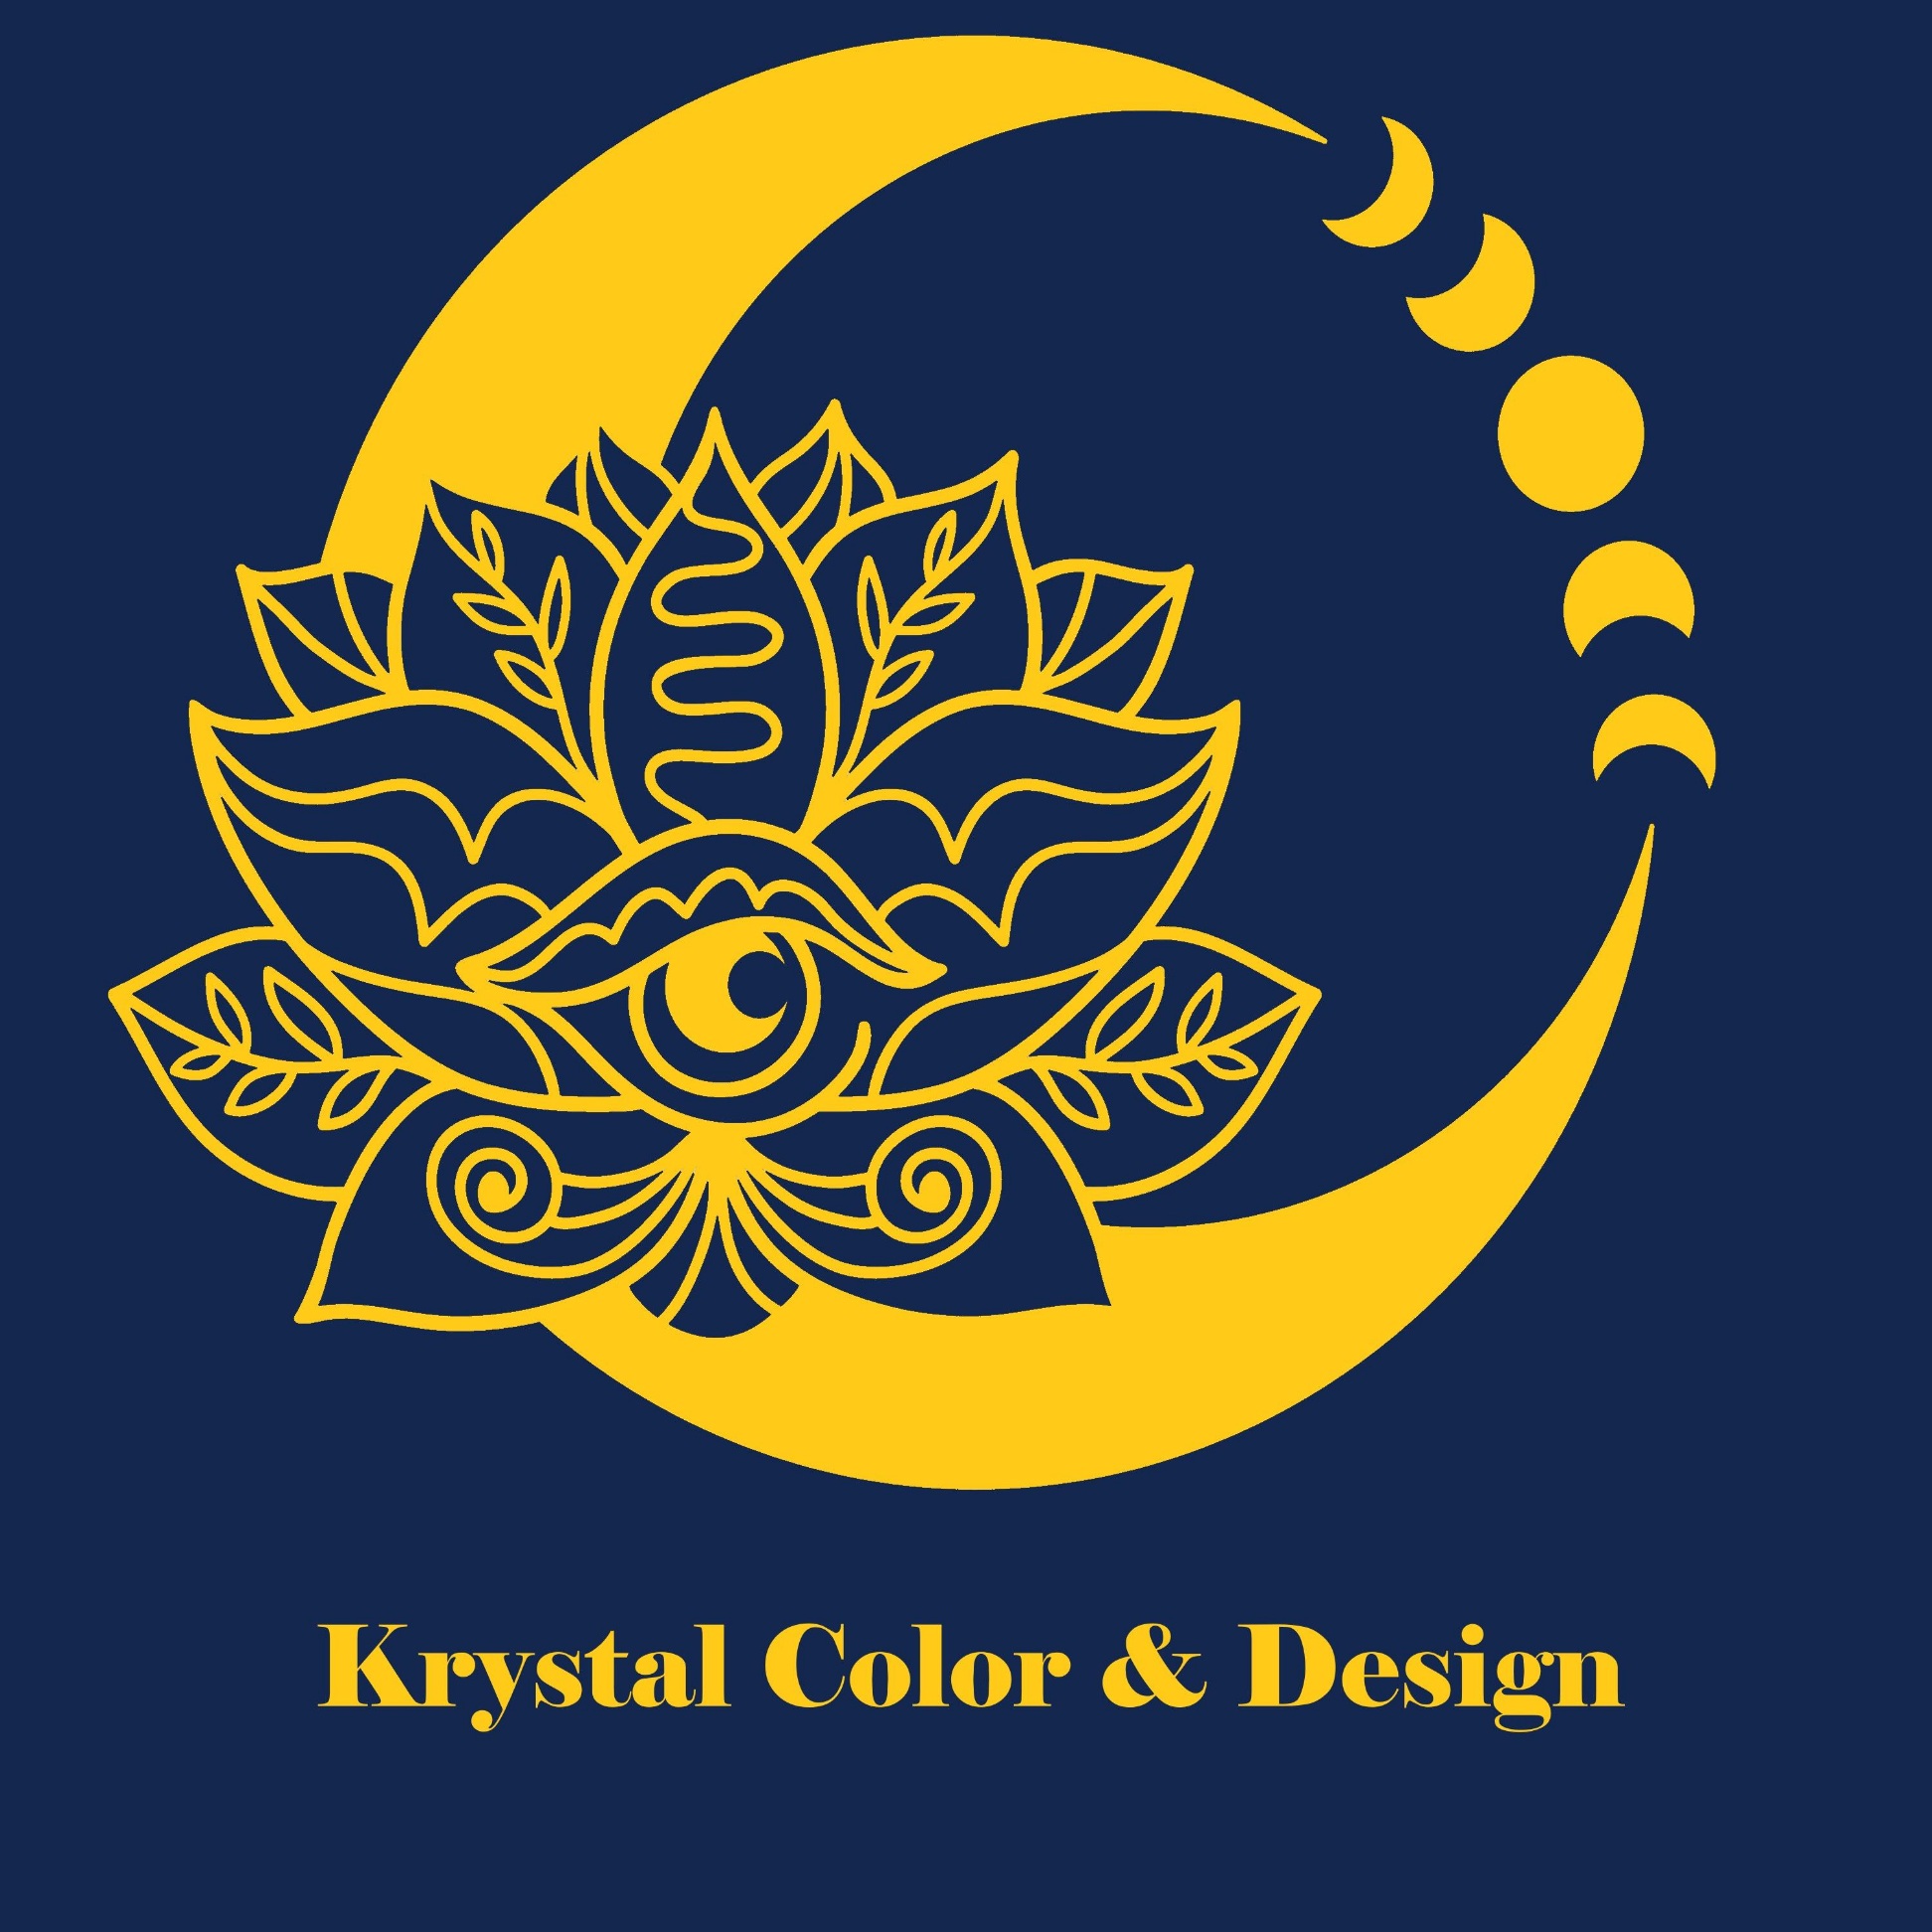 Krystal Color & Design